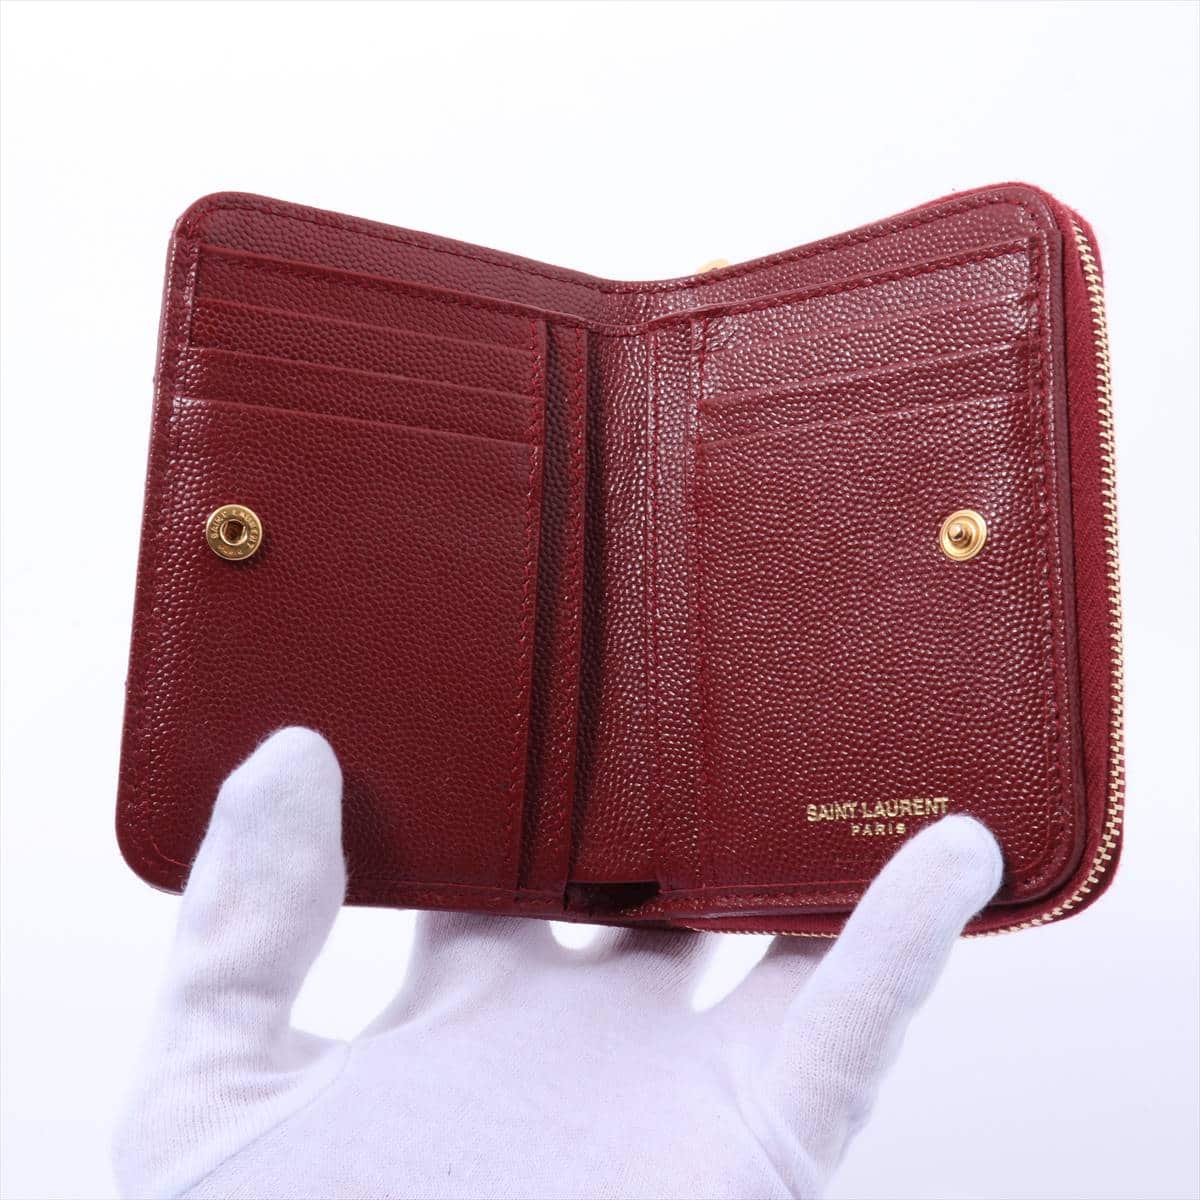 Saint Laurent Paris V Stitch GUE403723 Leather Wallet Red